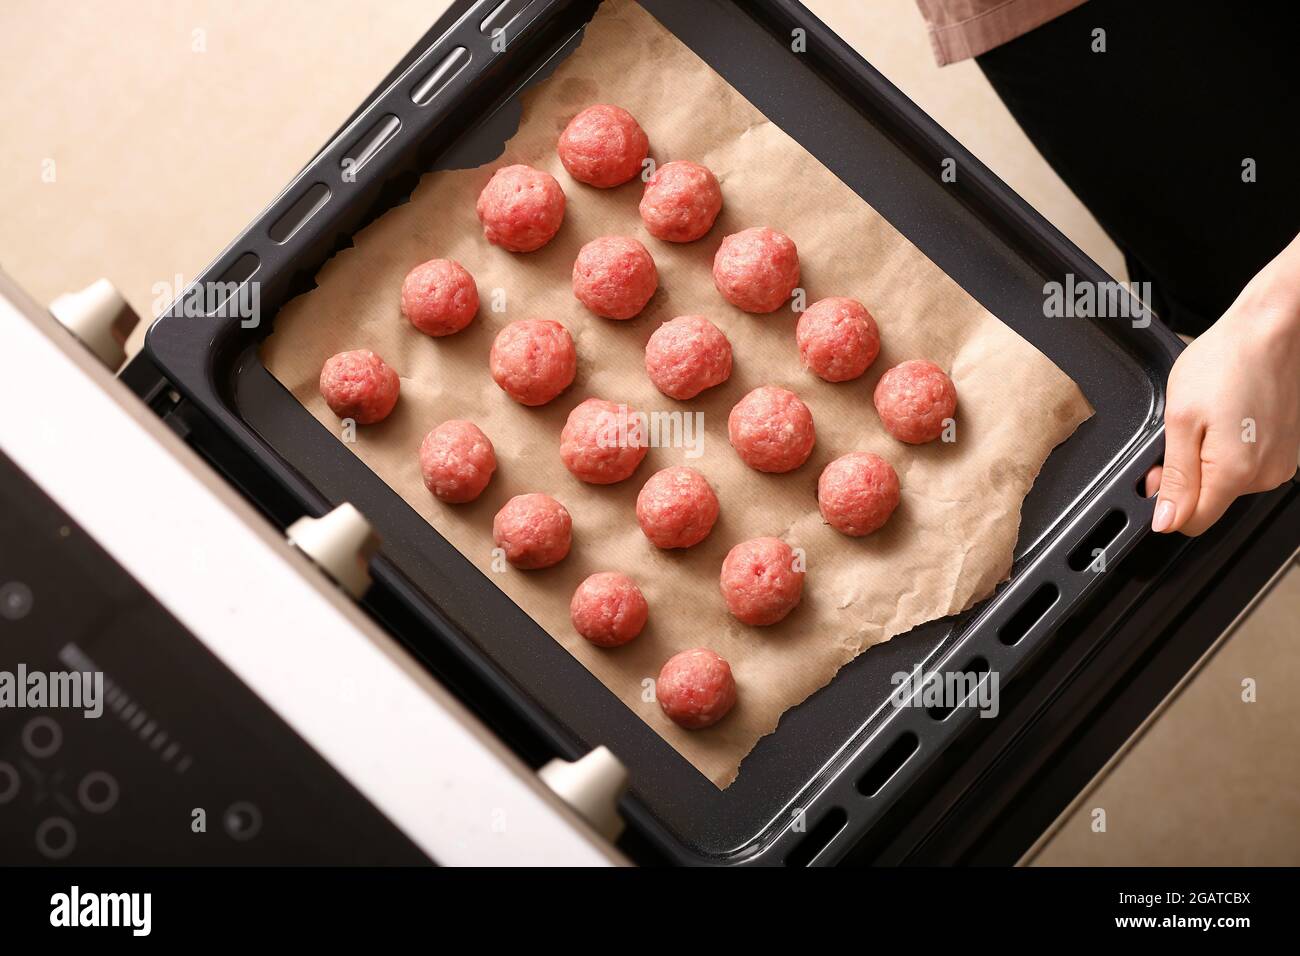 Frau, die Backblech mit rohen Koteletten aus frischem Zopf in den Ofen  legt, Nahaufnahme Stockfotografie - Alamy